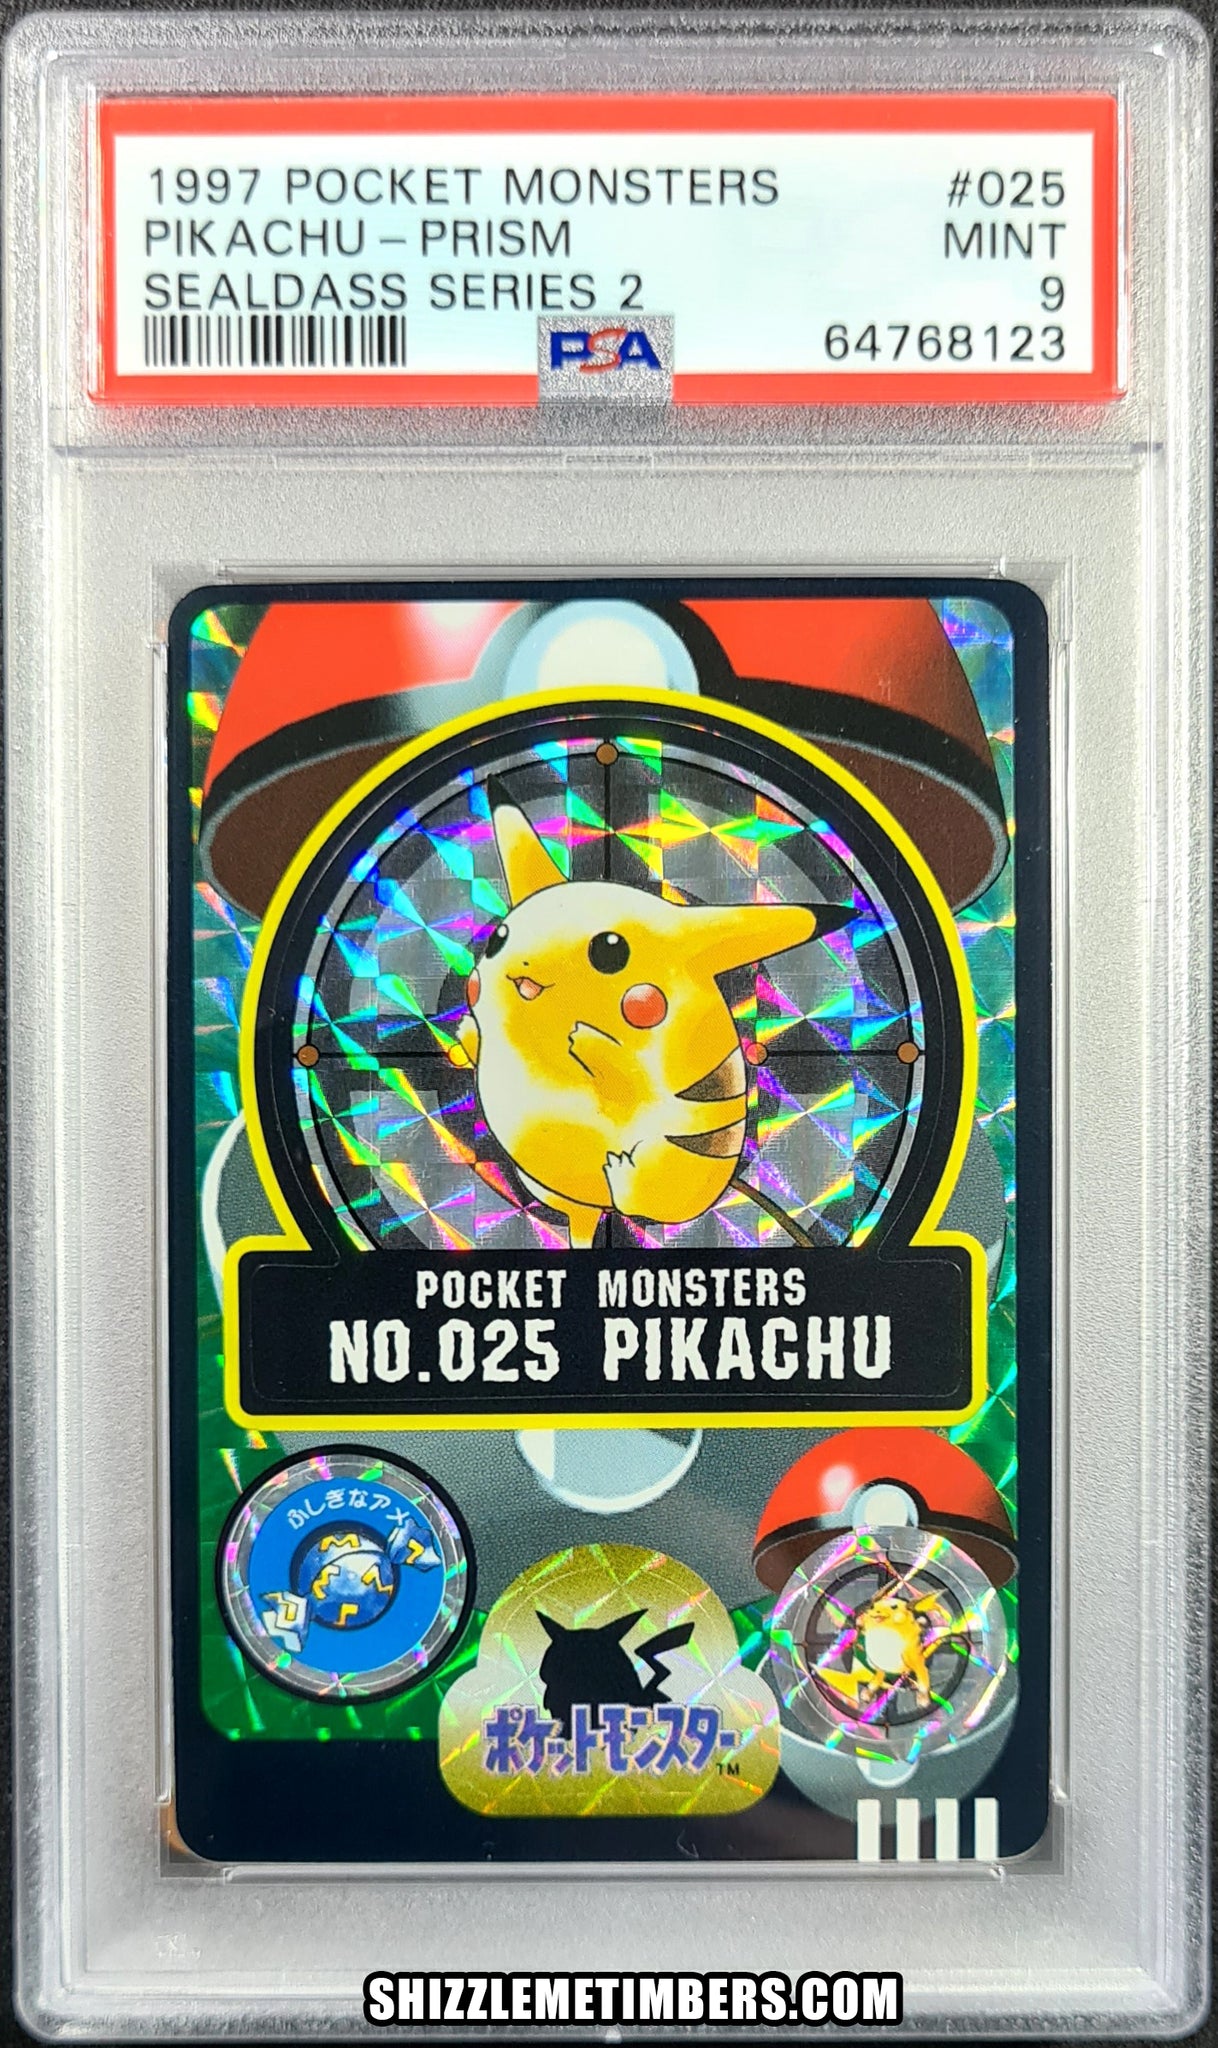 Pikachu 025 Prism Pokemon Japanese Carddass Sealdass Series 2 